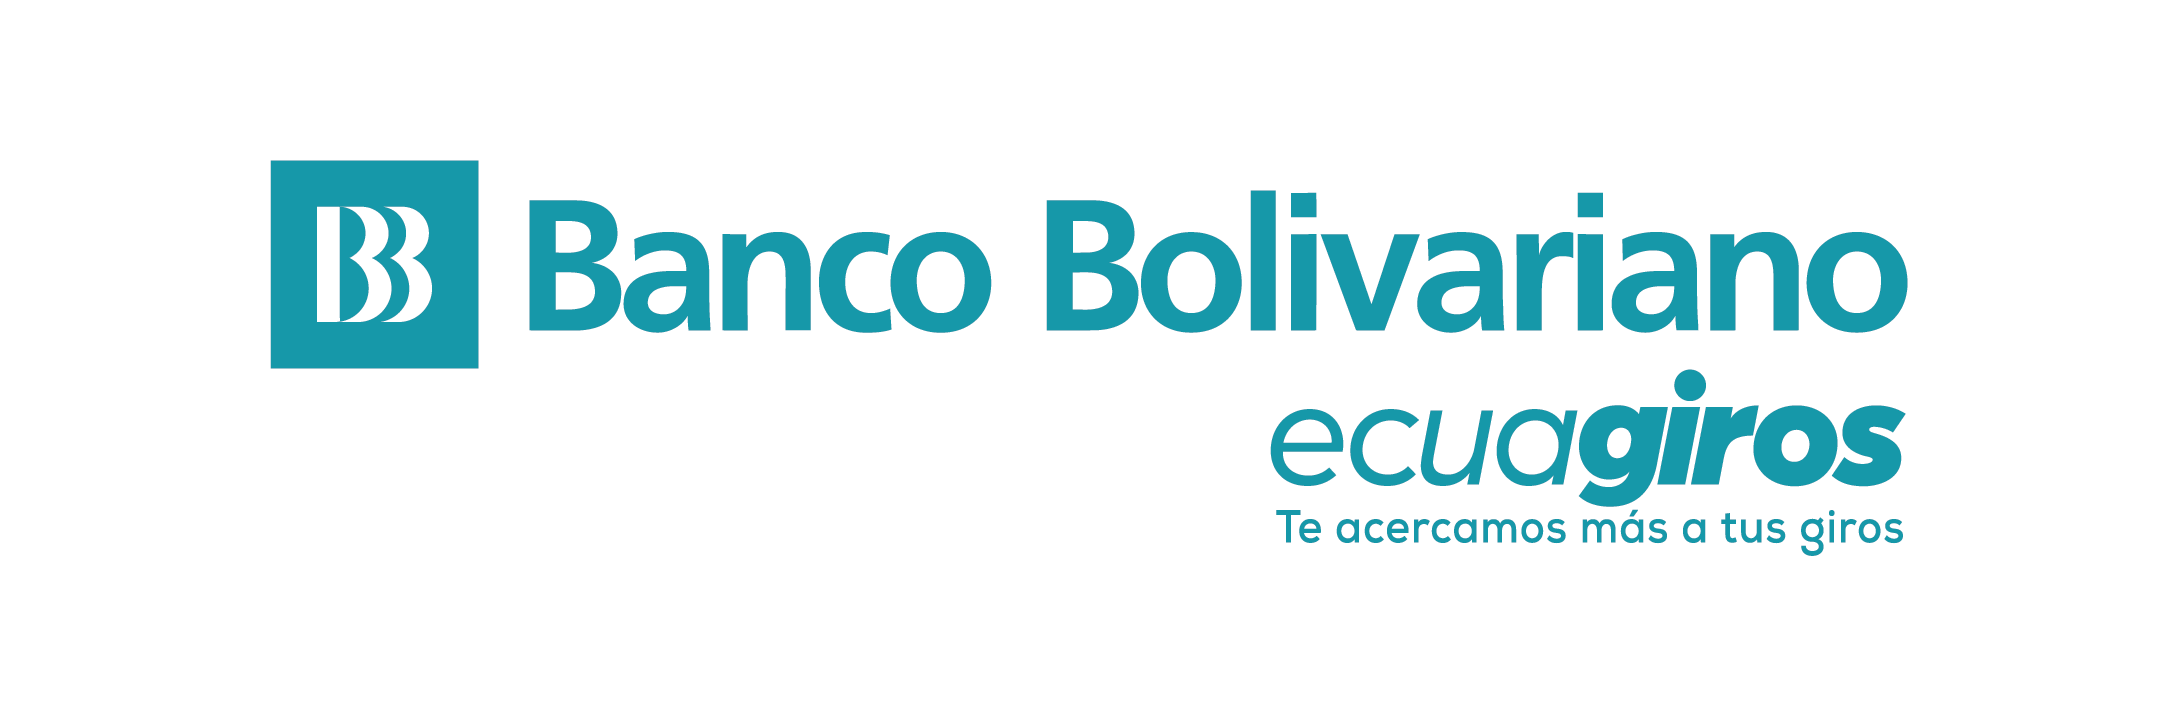 banco boliviano